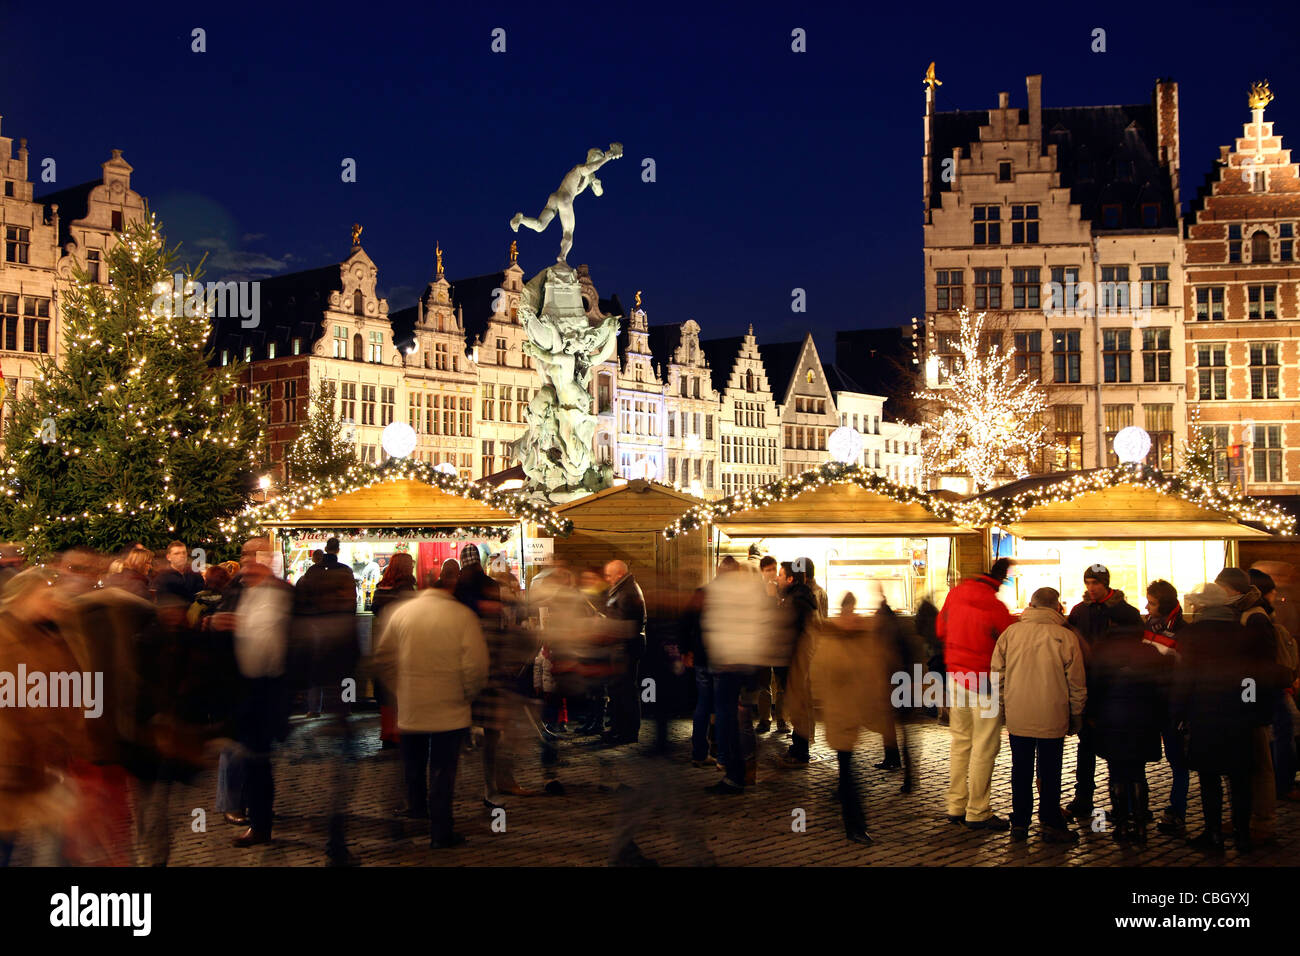 Mercatino di Natale nel centro storico, sul Grote Markt square di Anversa,  Fiandre, Belgio, Europa Foto stock - Alamy